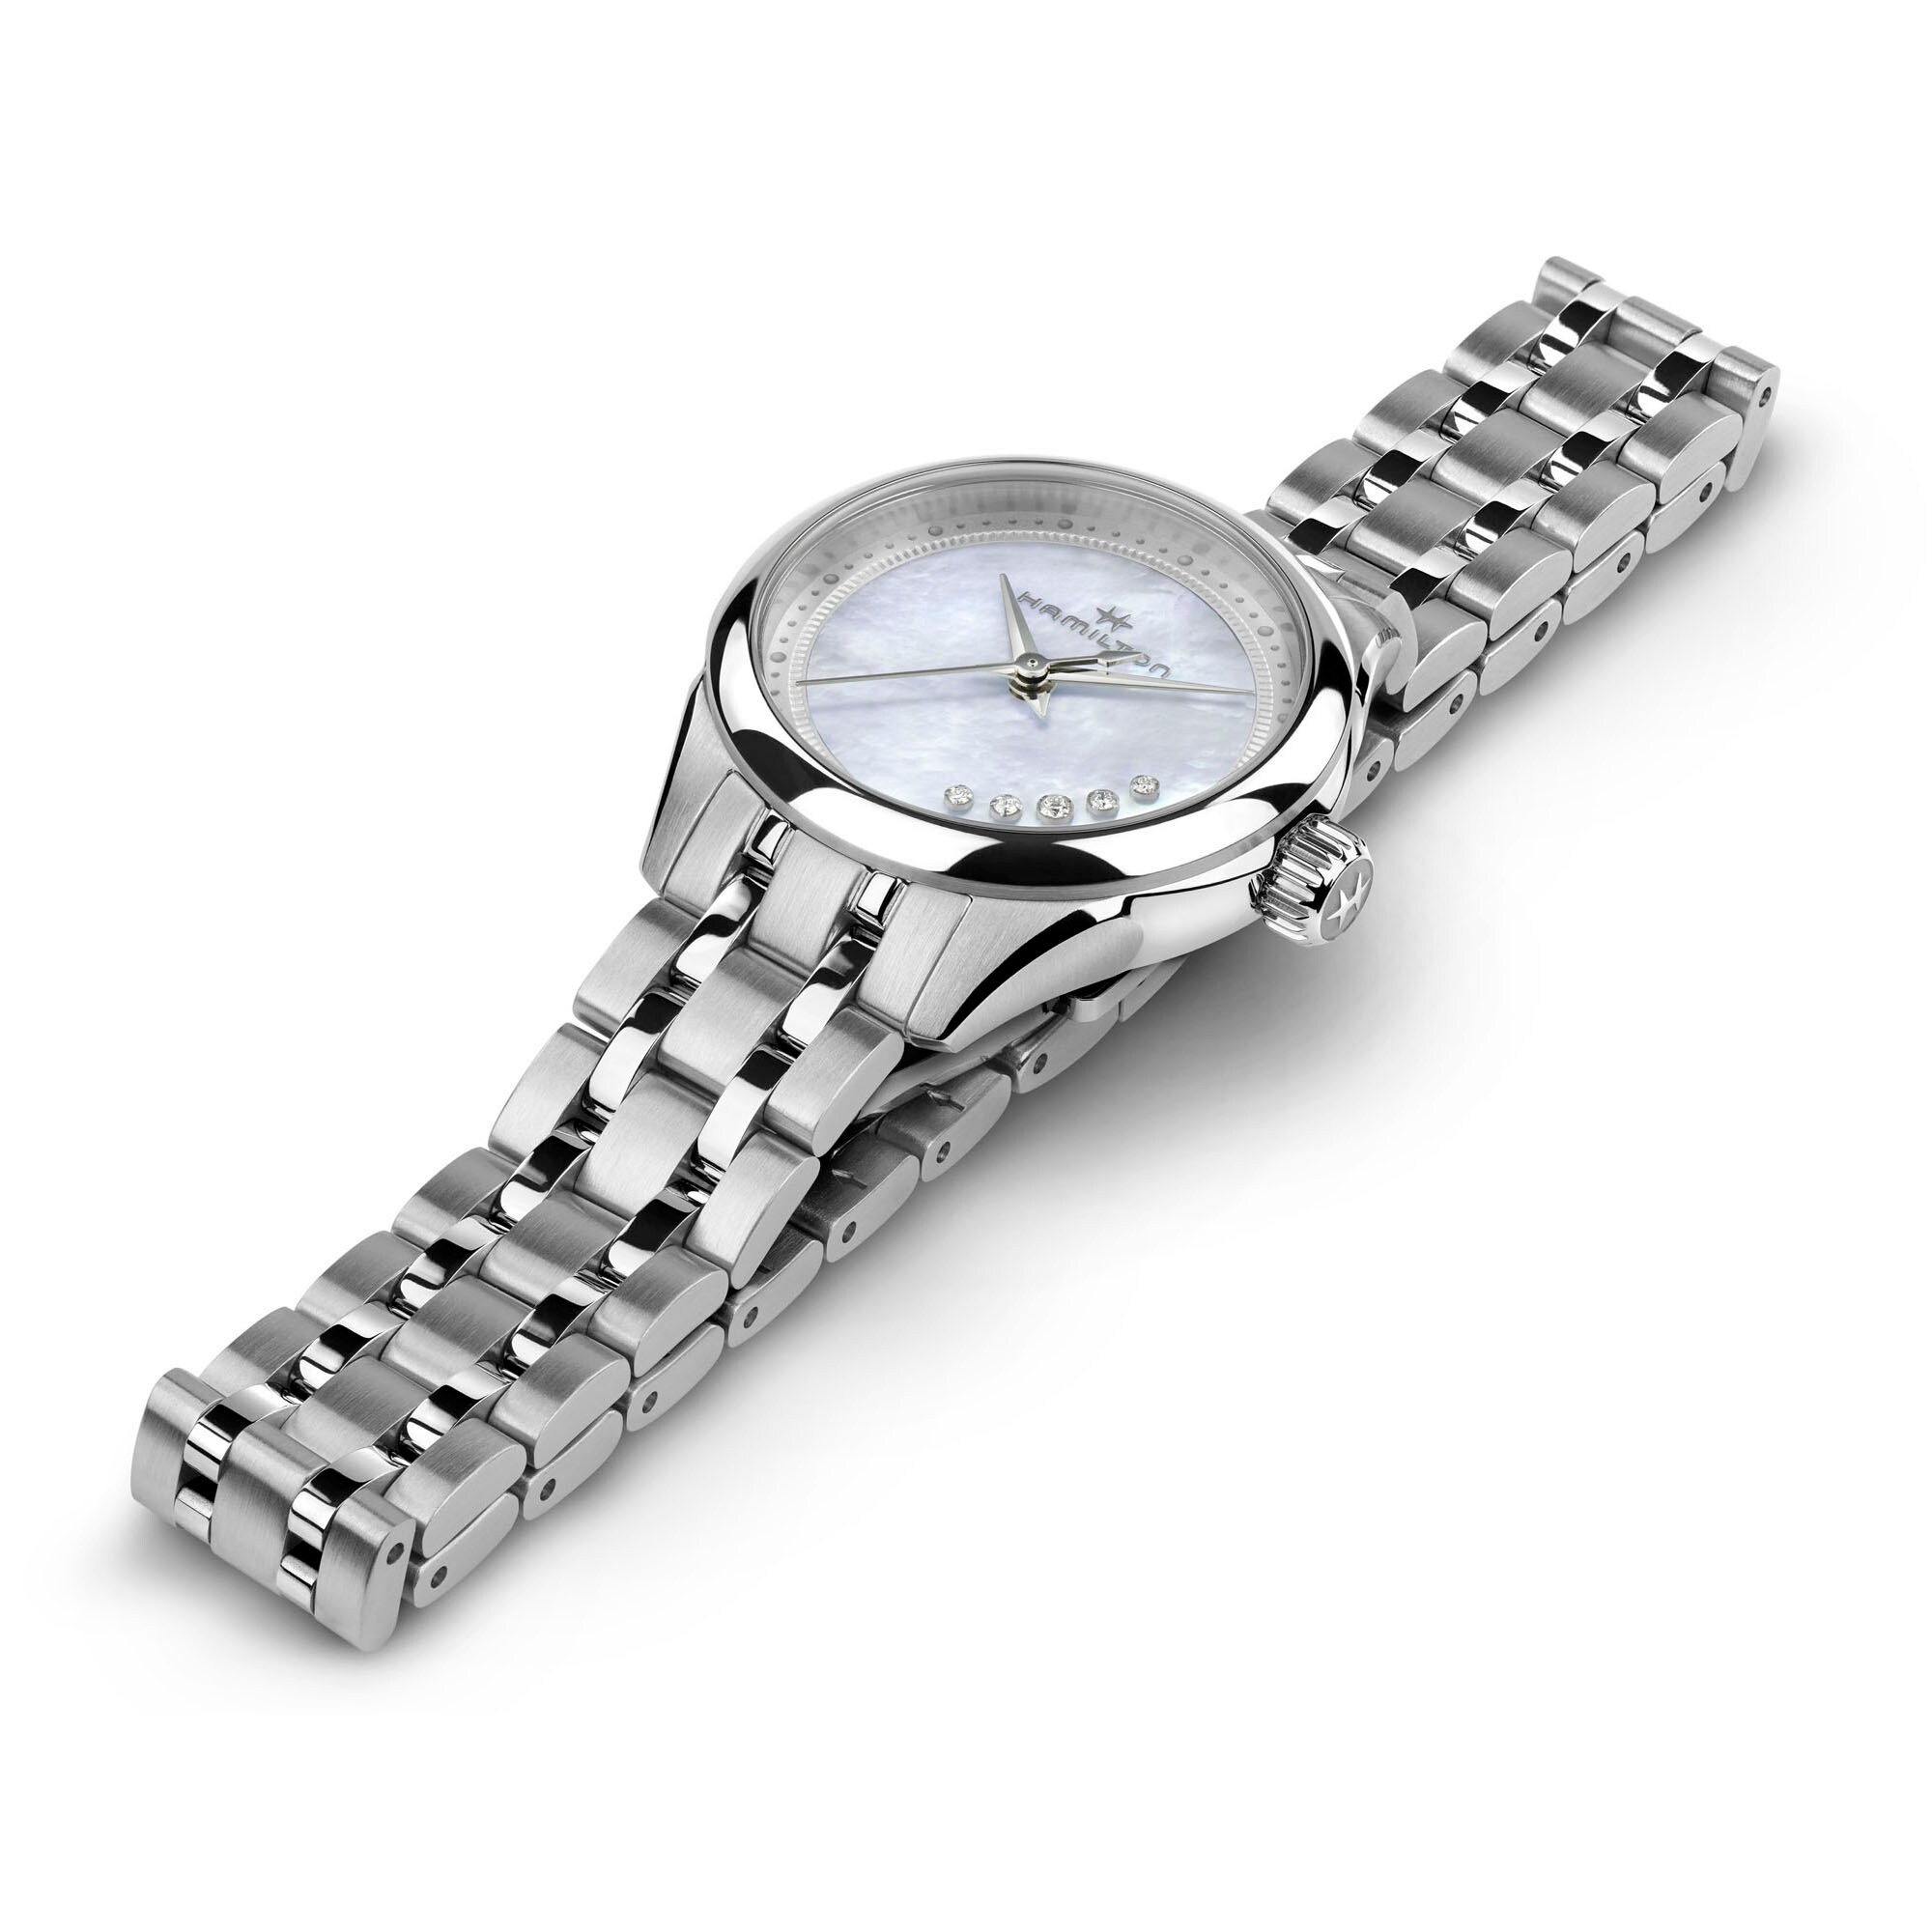 ジャズマスター Lady Quartz - H32111190 - Hamilton Watch